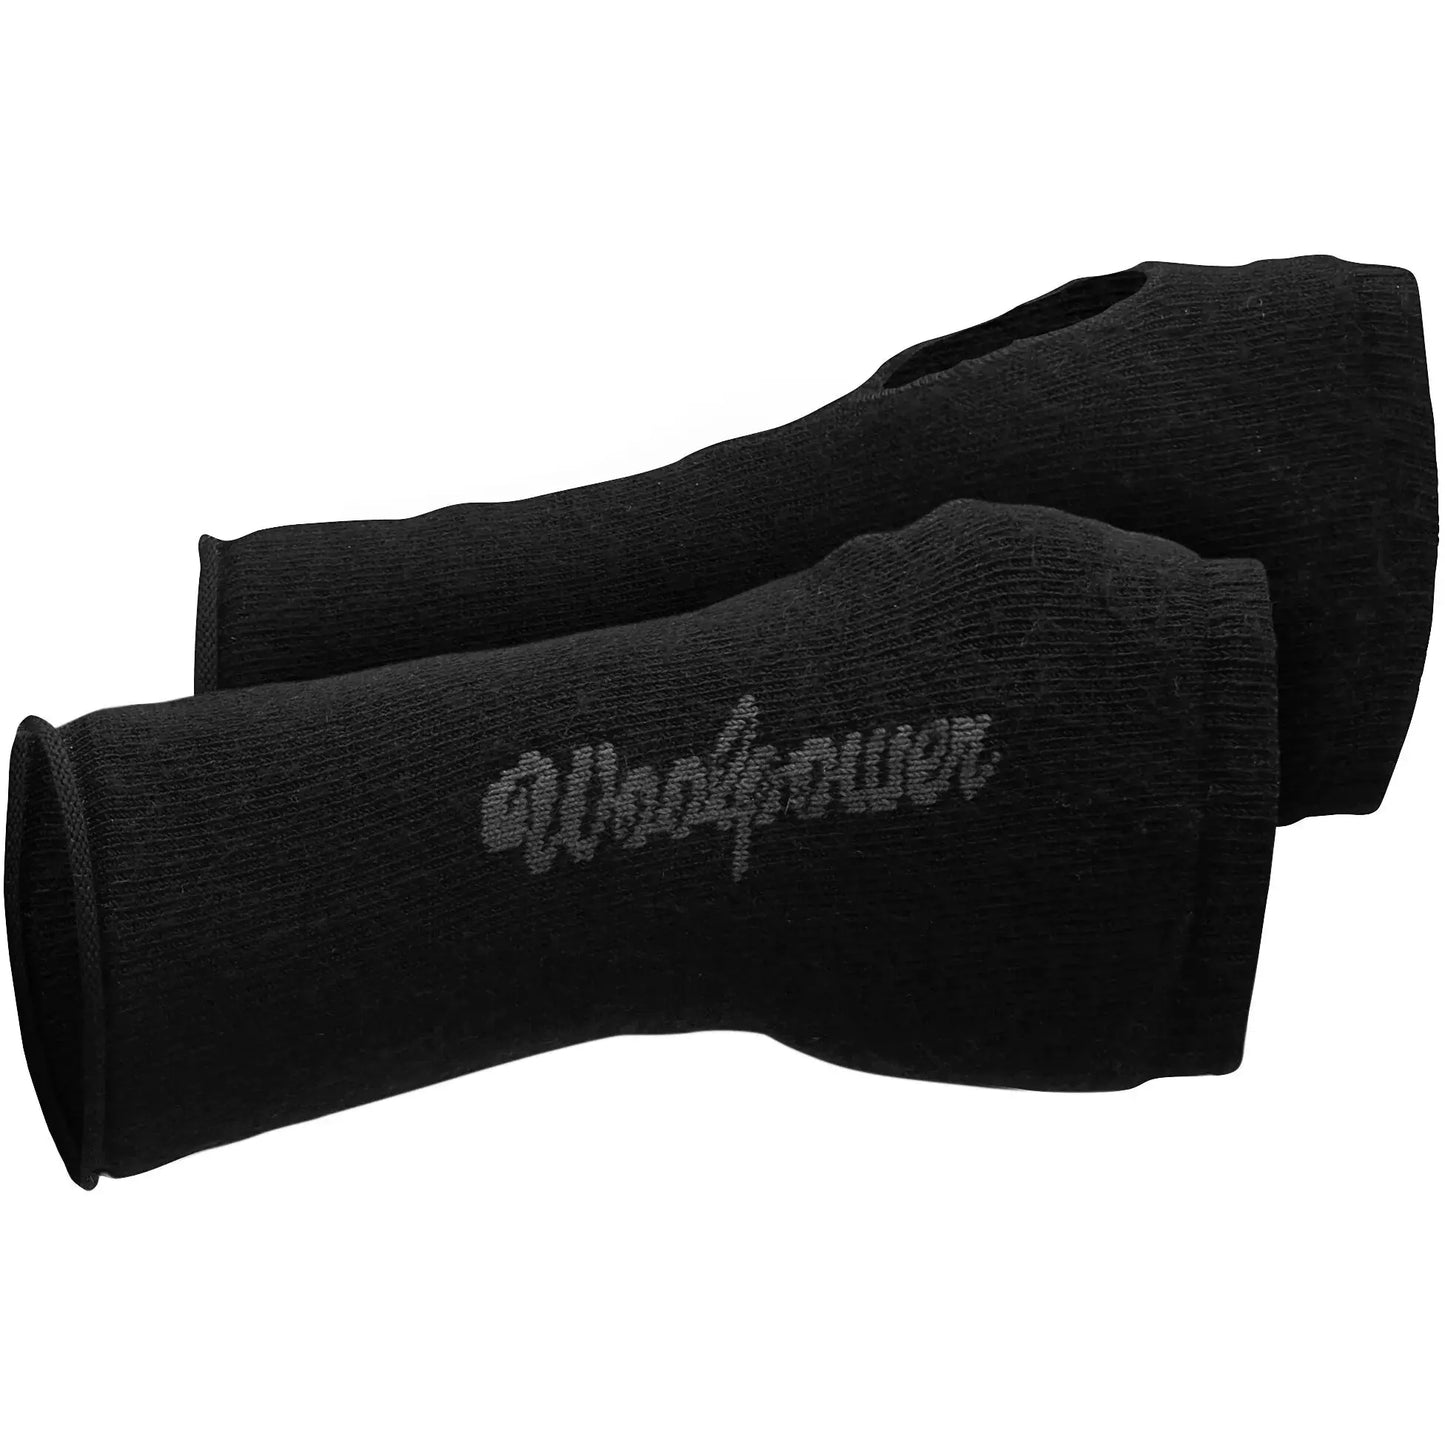 Woolpower Wrist Gaiter